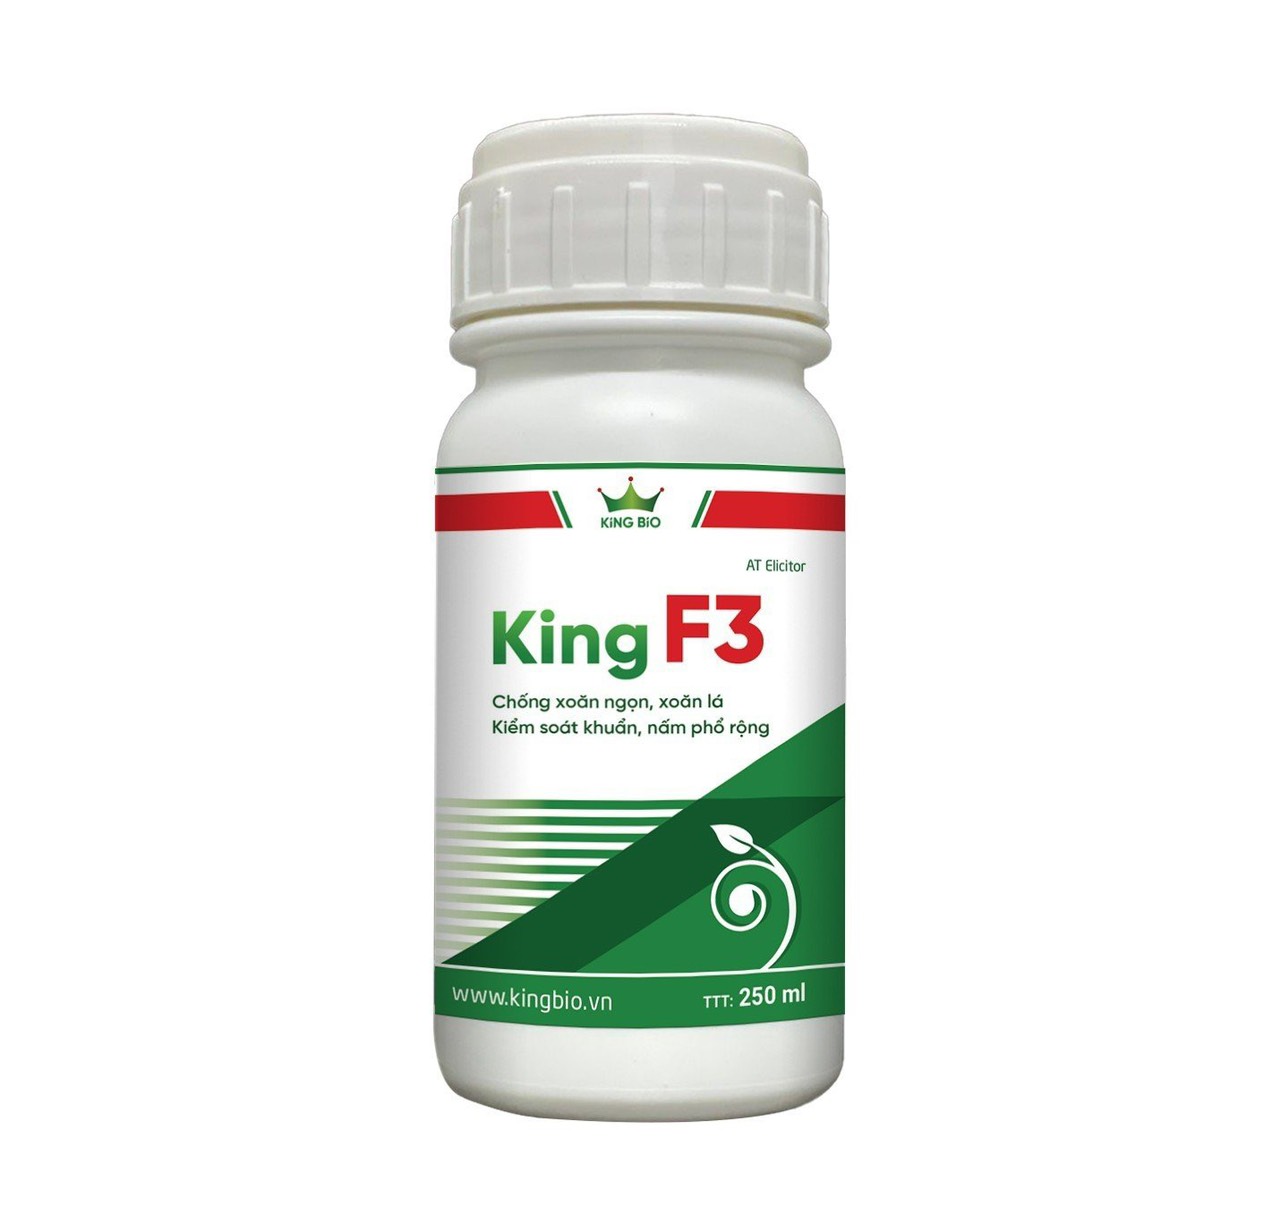 King F3 - Chống xoăn ngọn xoăn lá, kiểm soát khuẩn và nấm phổ rộng